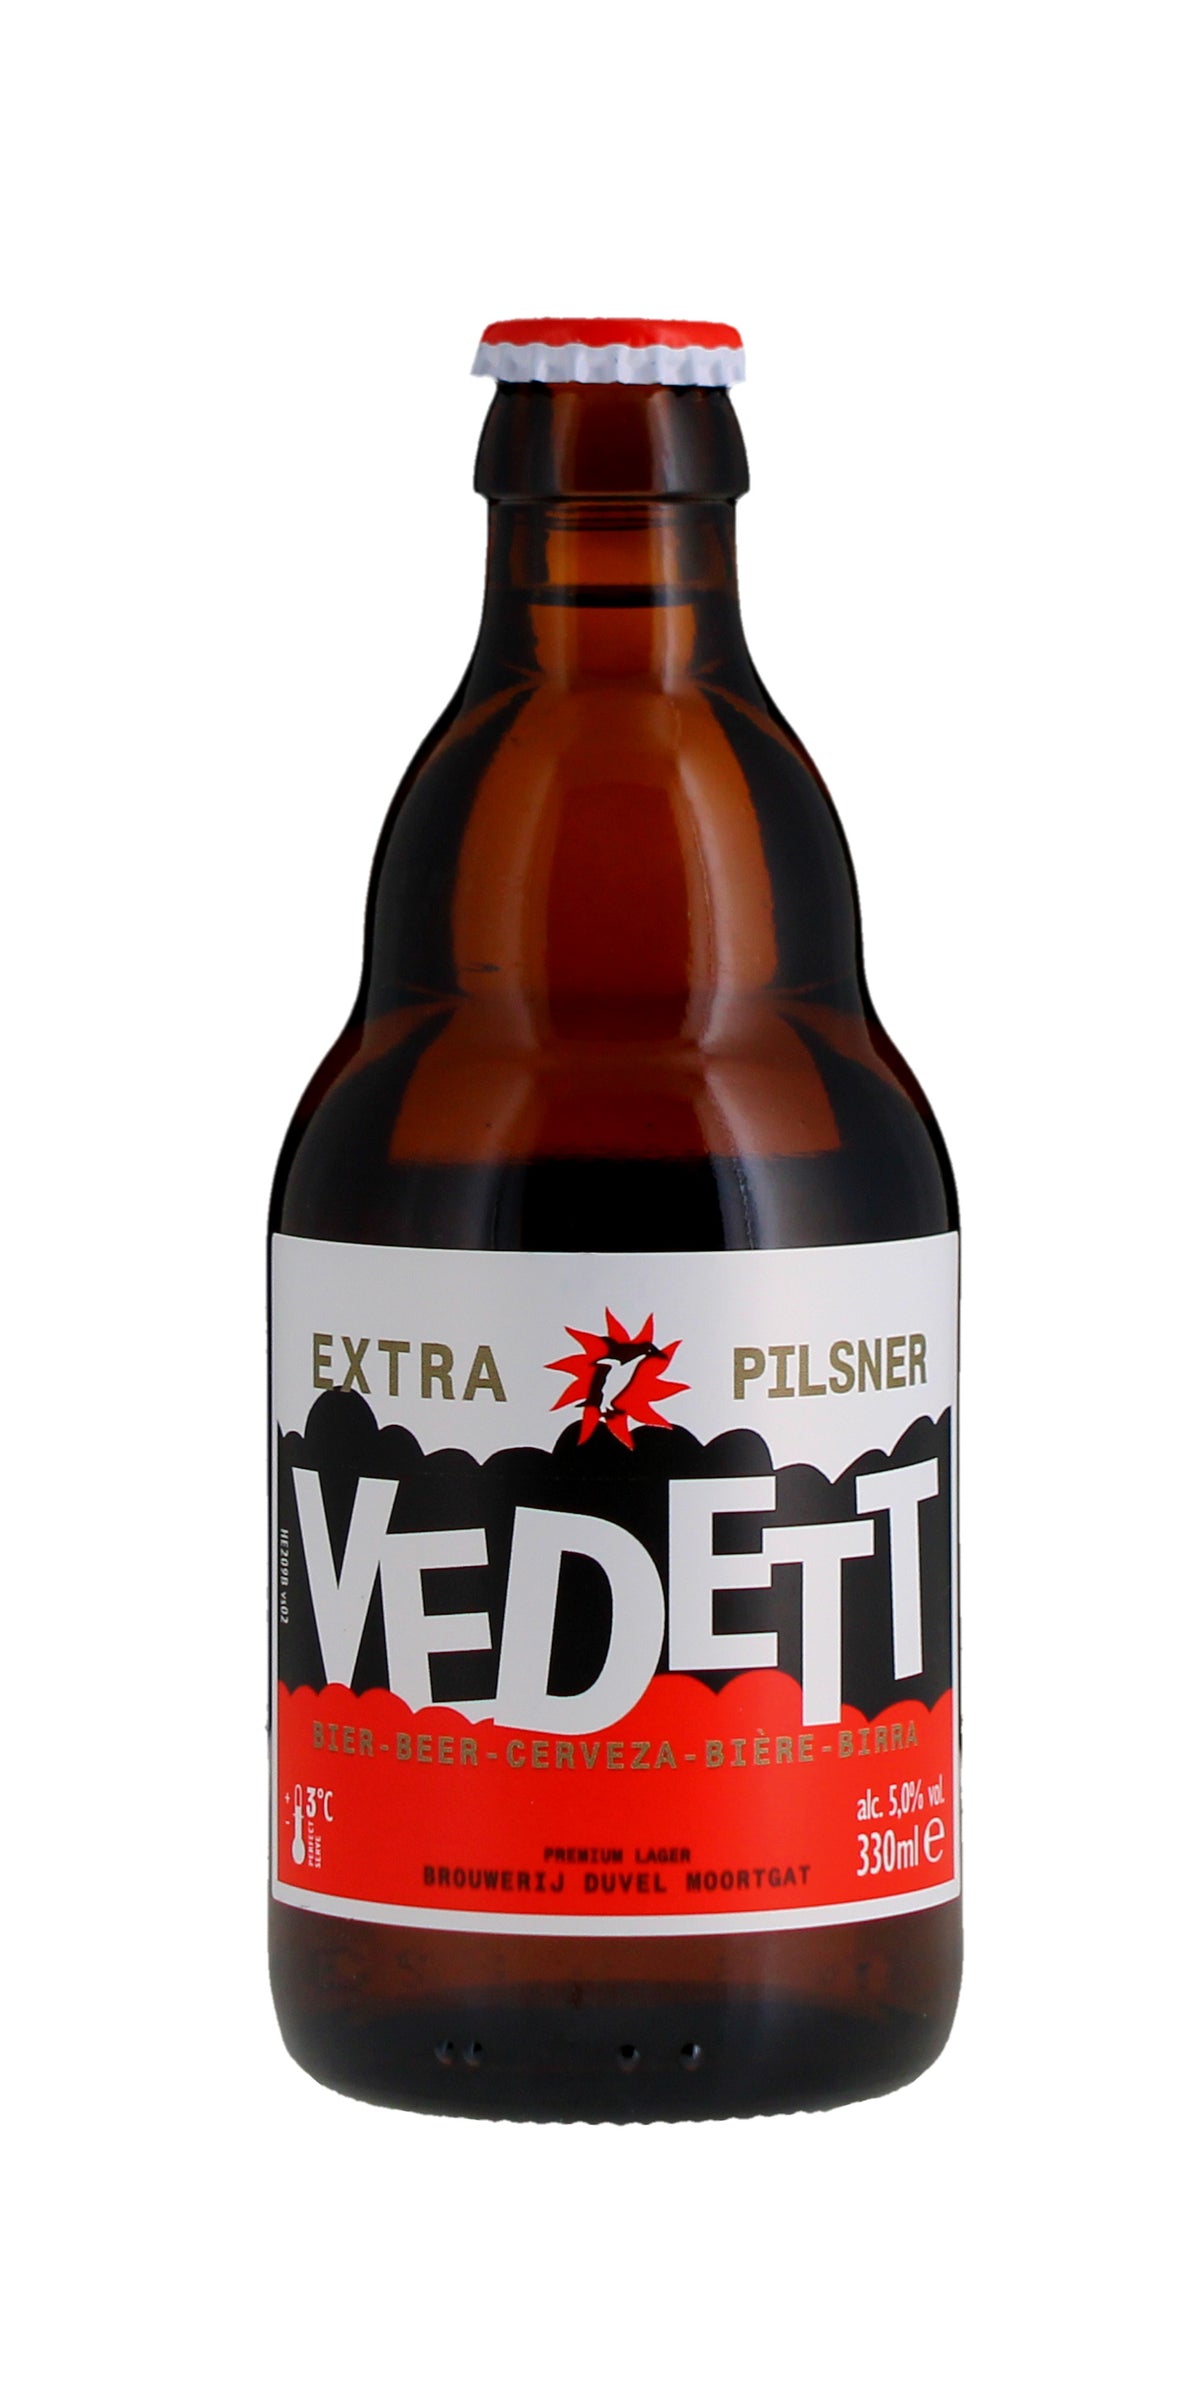 Vedett Pilsner, 330ml Bottle, 5%